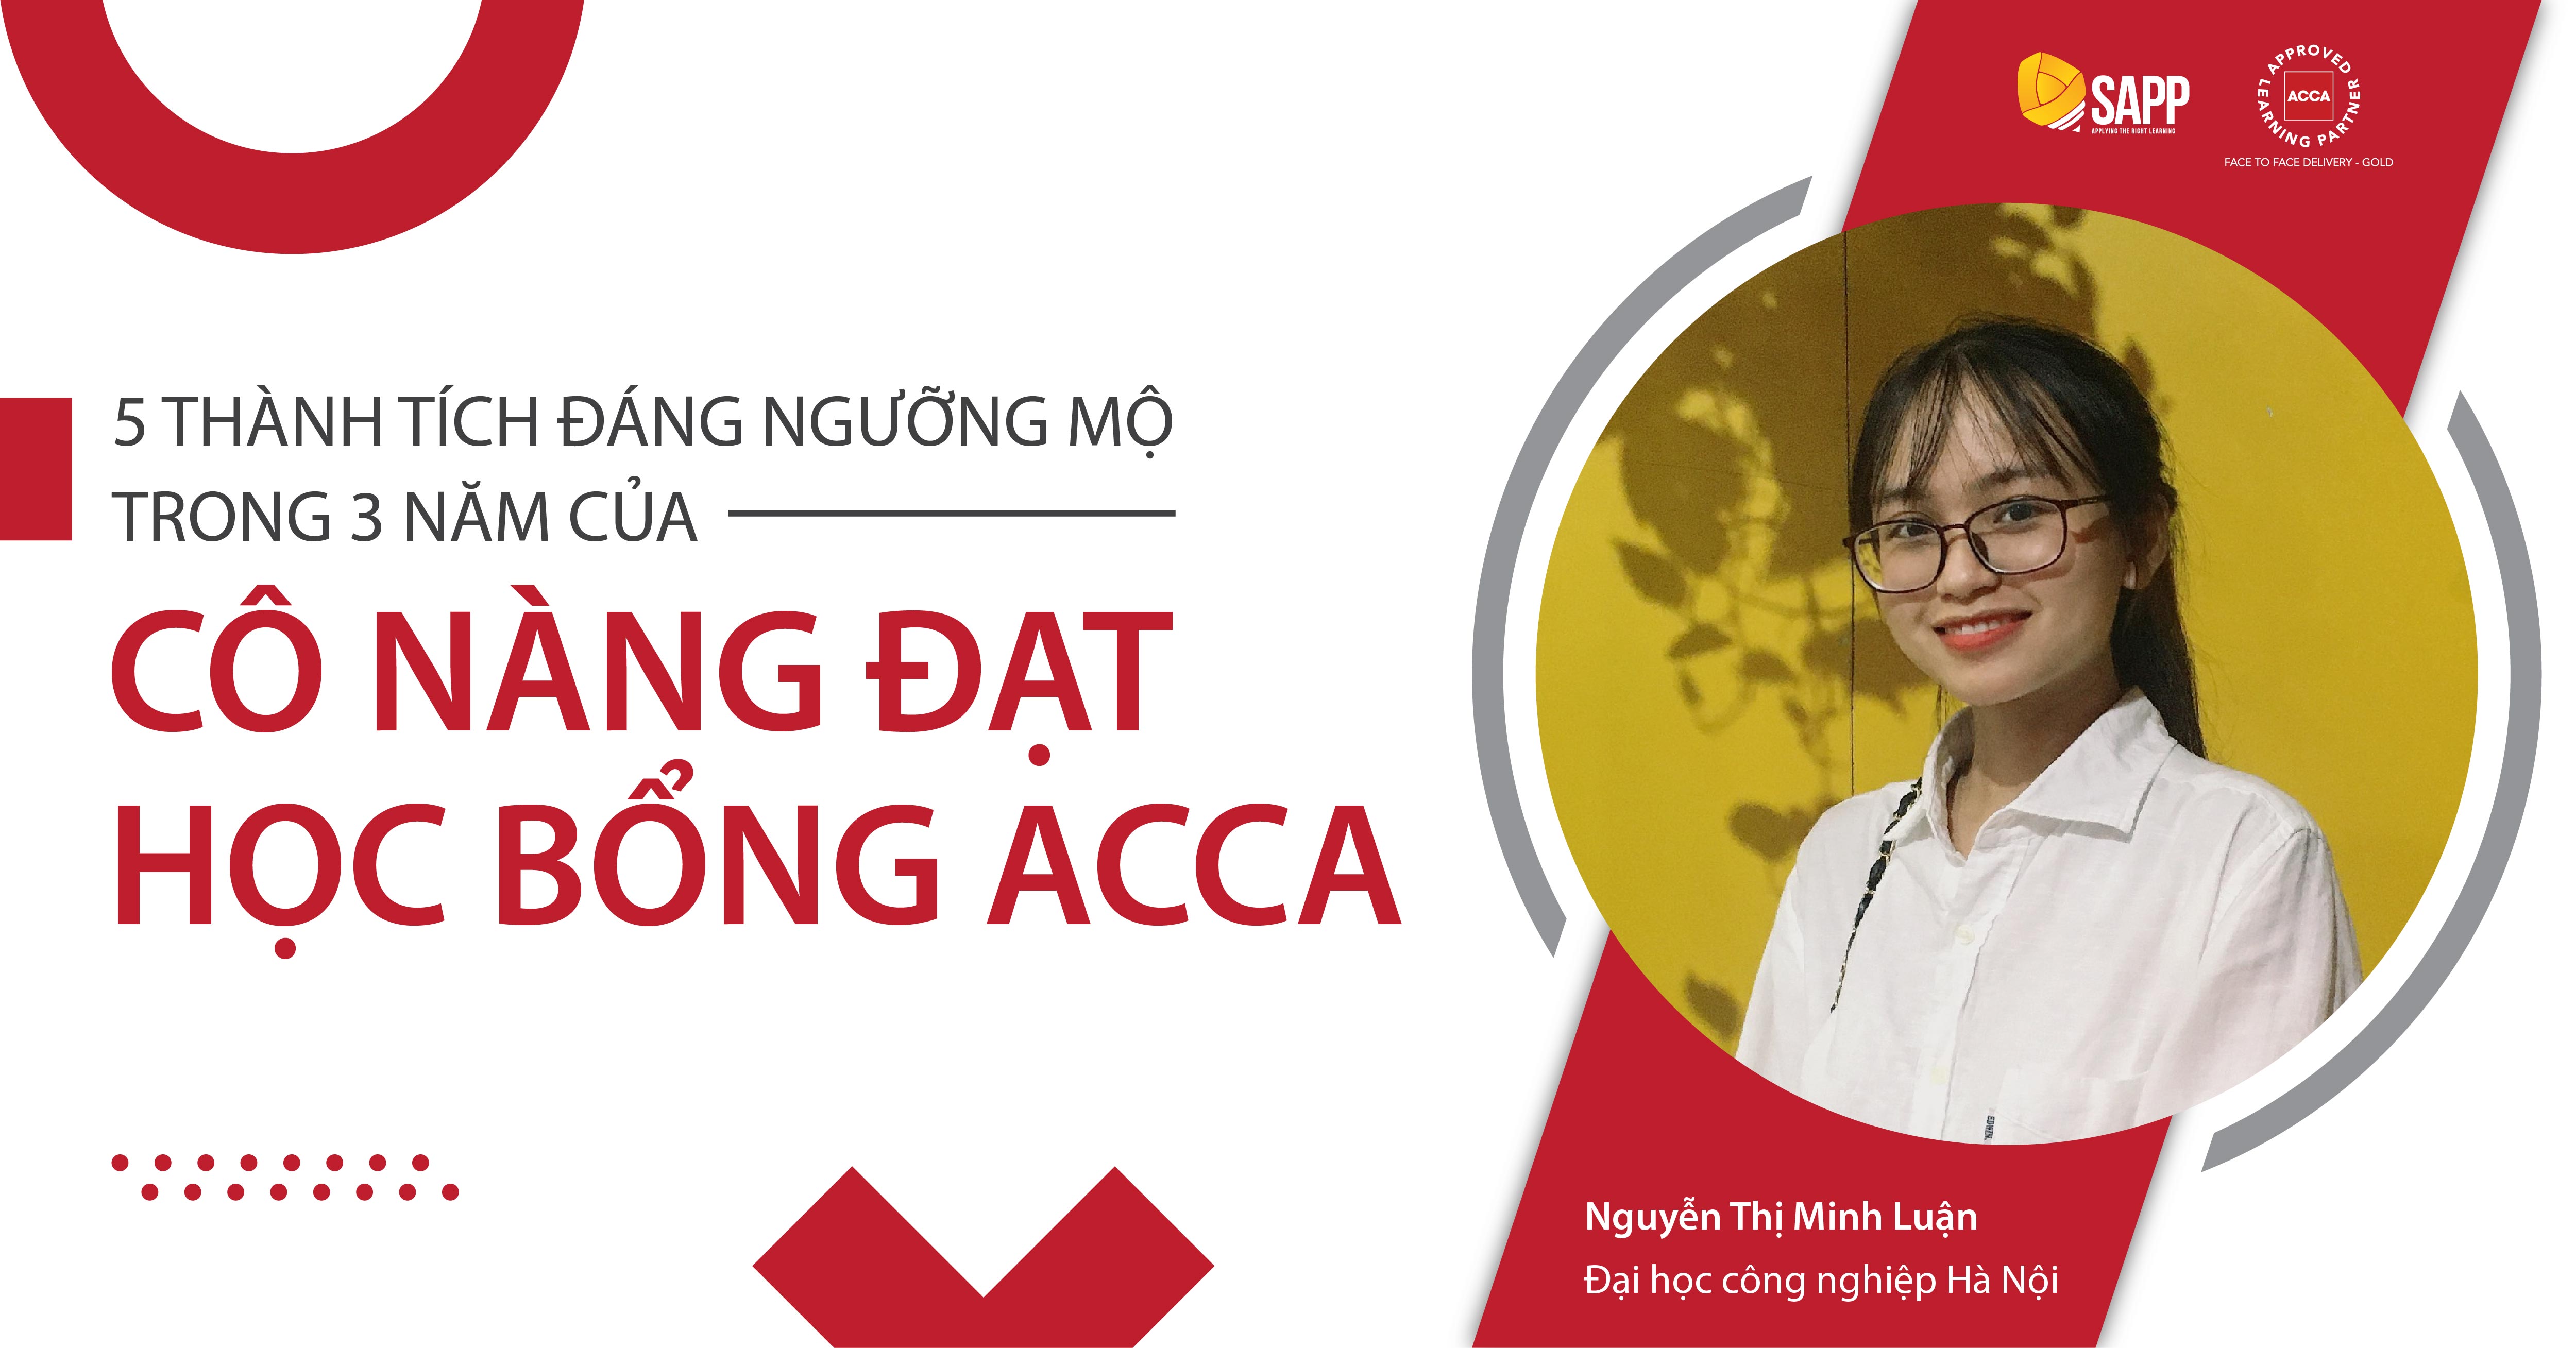 5 thành tích đáng ngưỡng mộ trong 3 năm của Minh Luận - cô nàng đạt học bổng ACCA 100%